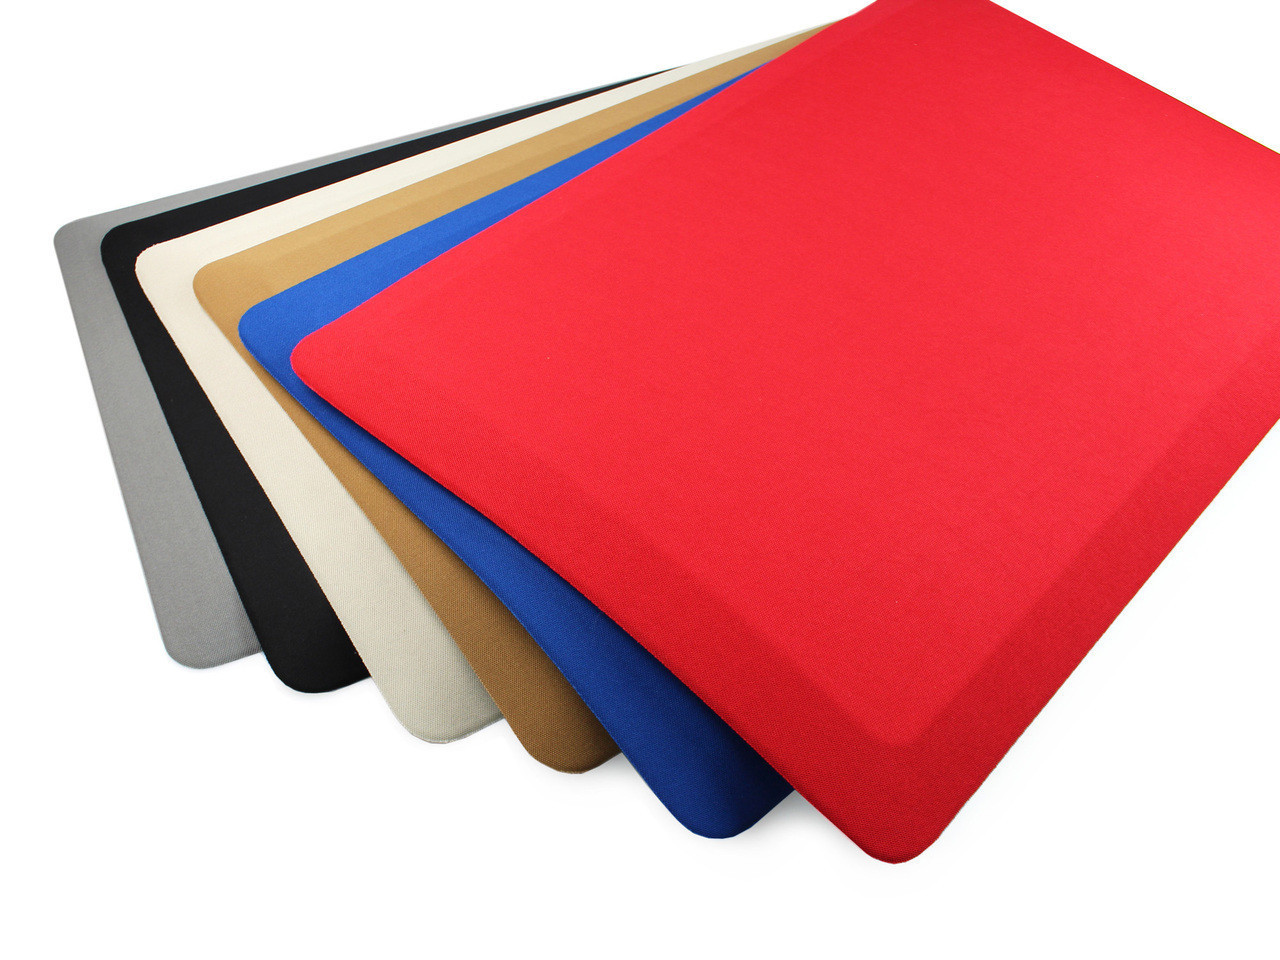 Ergonomic Anti Fatigue Mat, Colorful Memory Foam Comfort Mat in